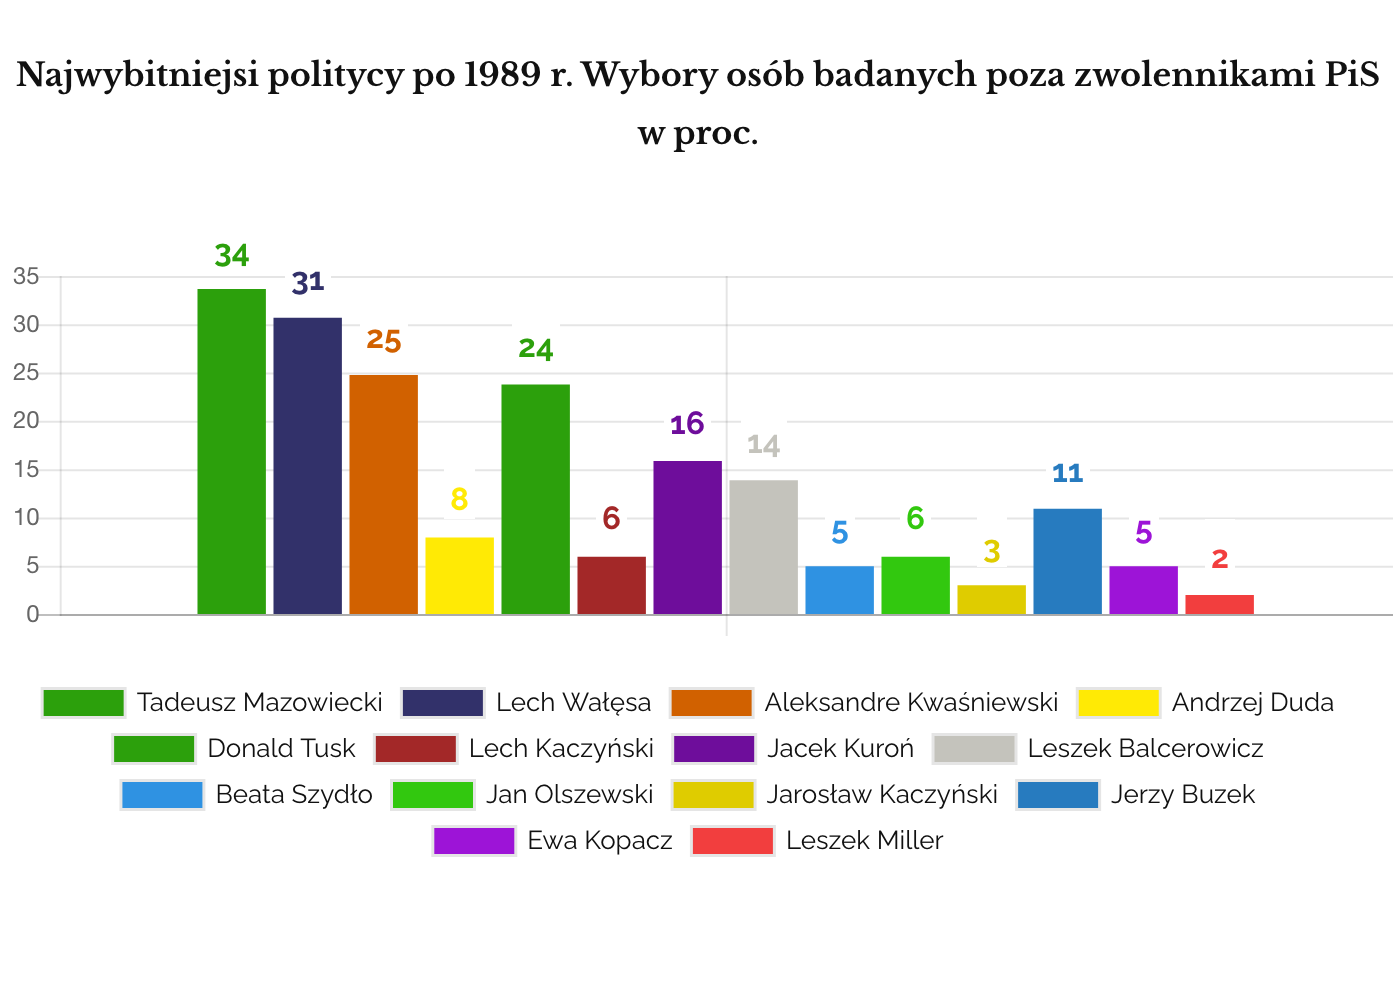 IPSOS Najwybitniejsi politycy po 1989 reszta Polski poza PiS